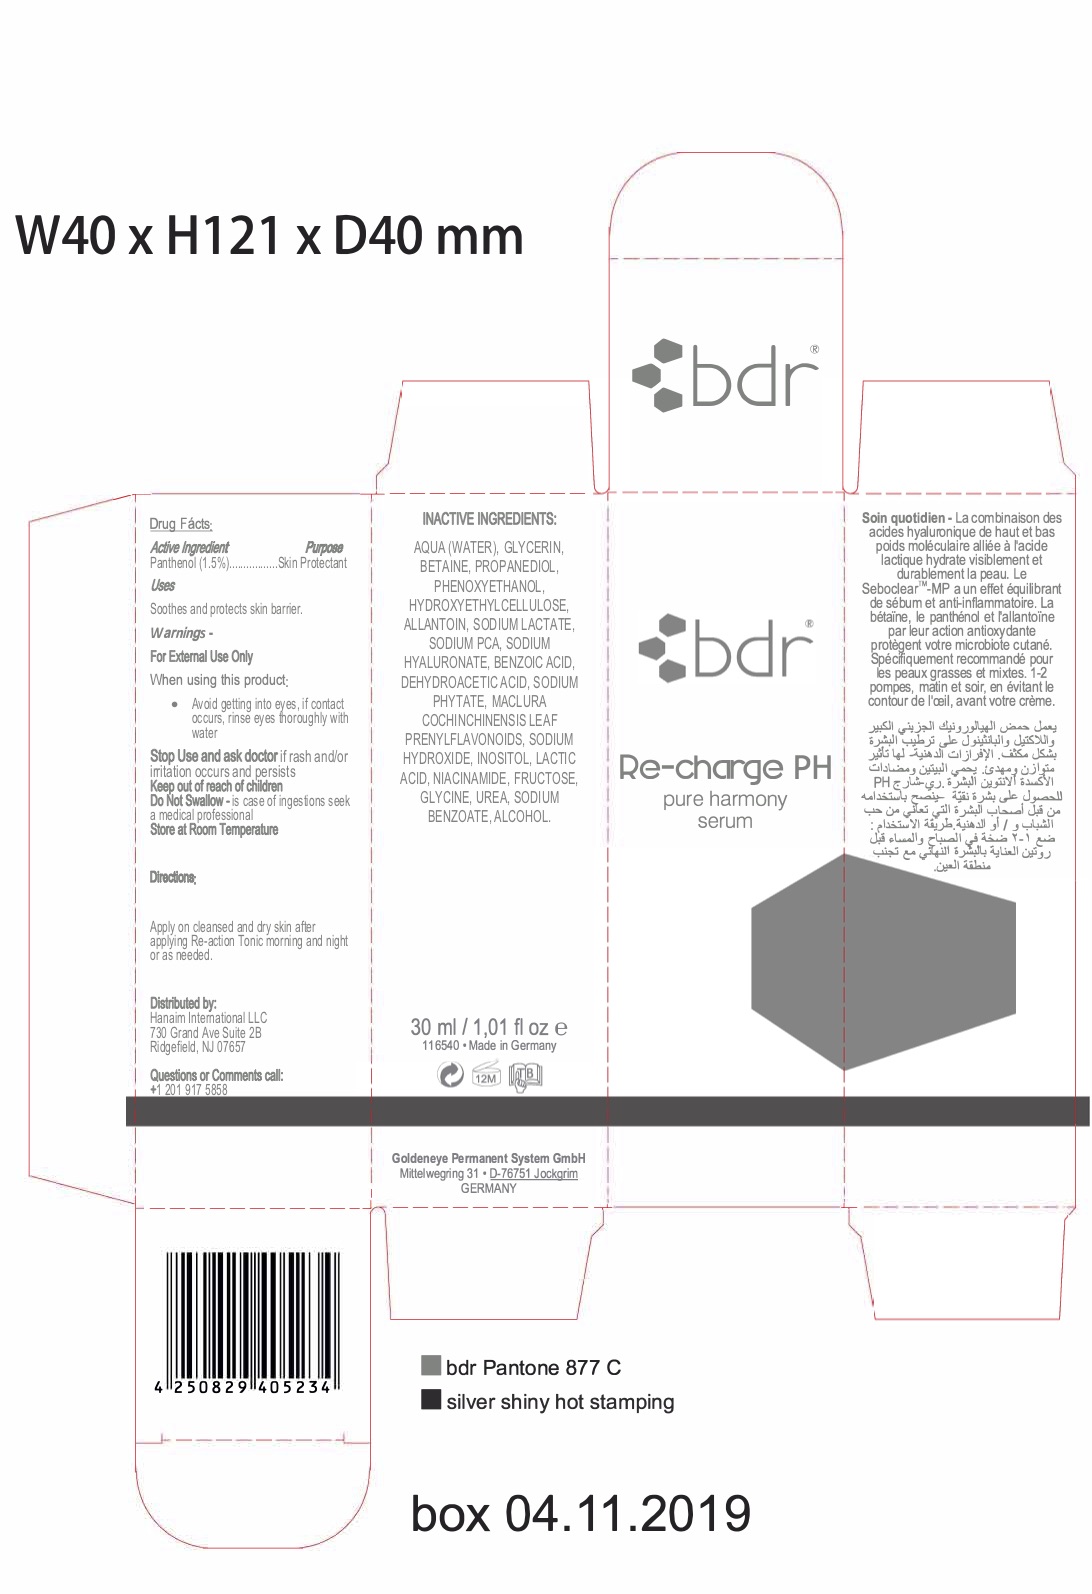 FDA label box recharge ph